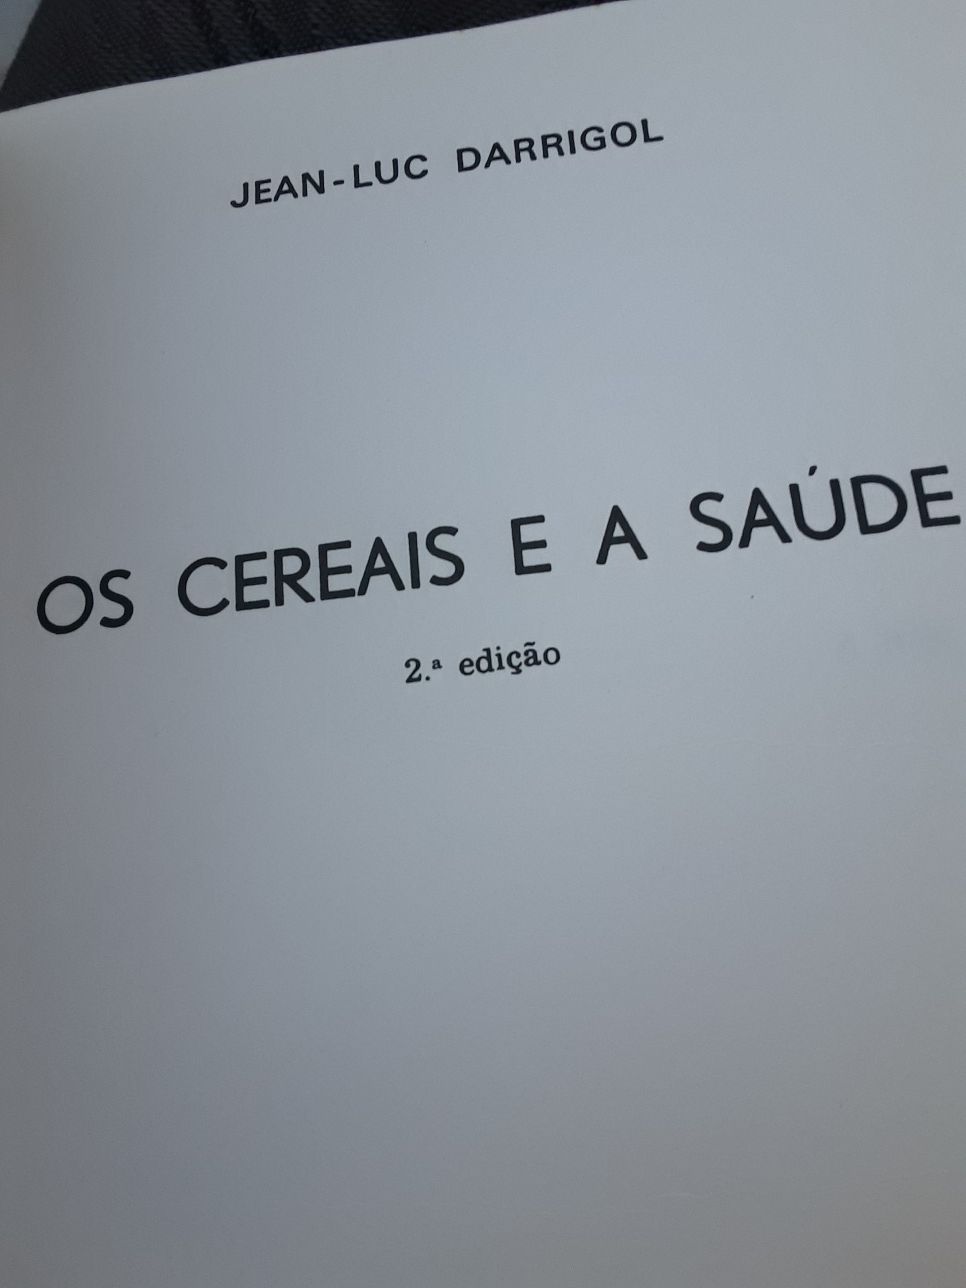 Os cereais e a Saude/ Jean Luc Darrigol